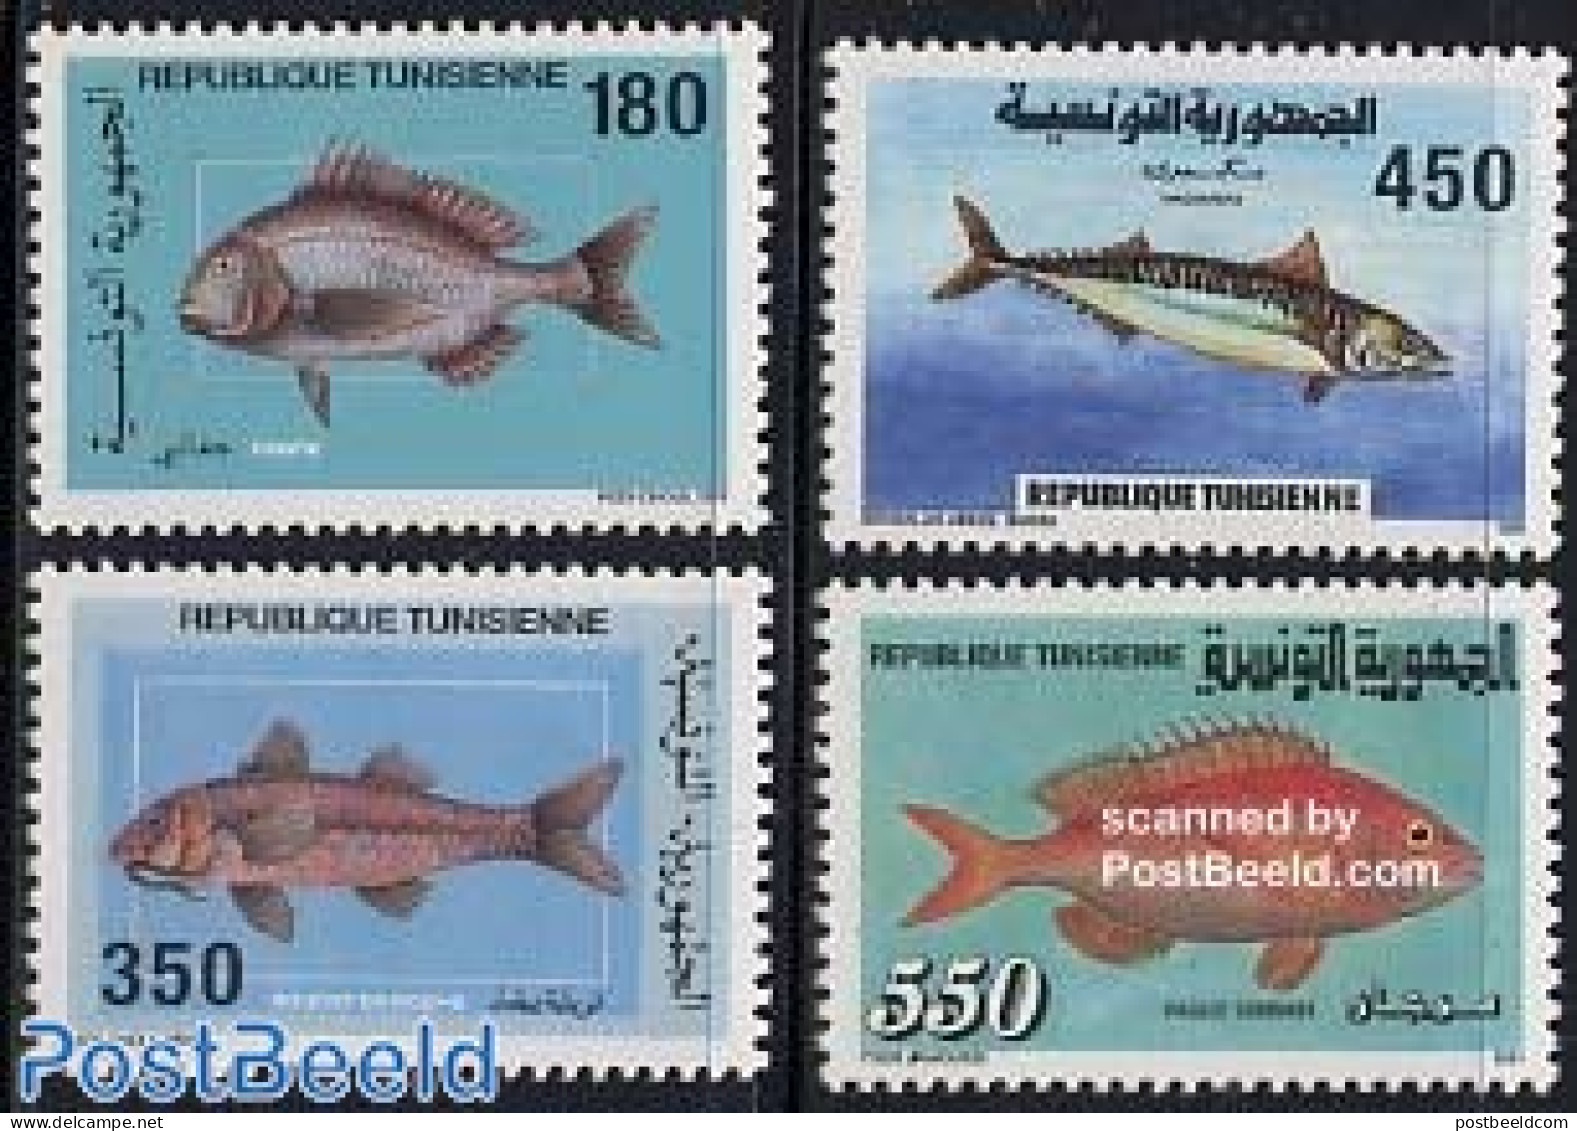 Tunisia 1991 Fish 4v, Mint NH, Nature - Fish - Fische